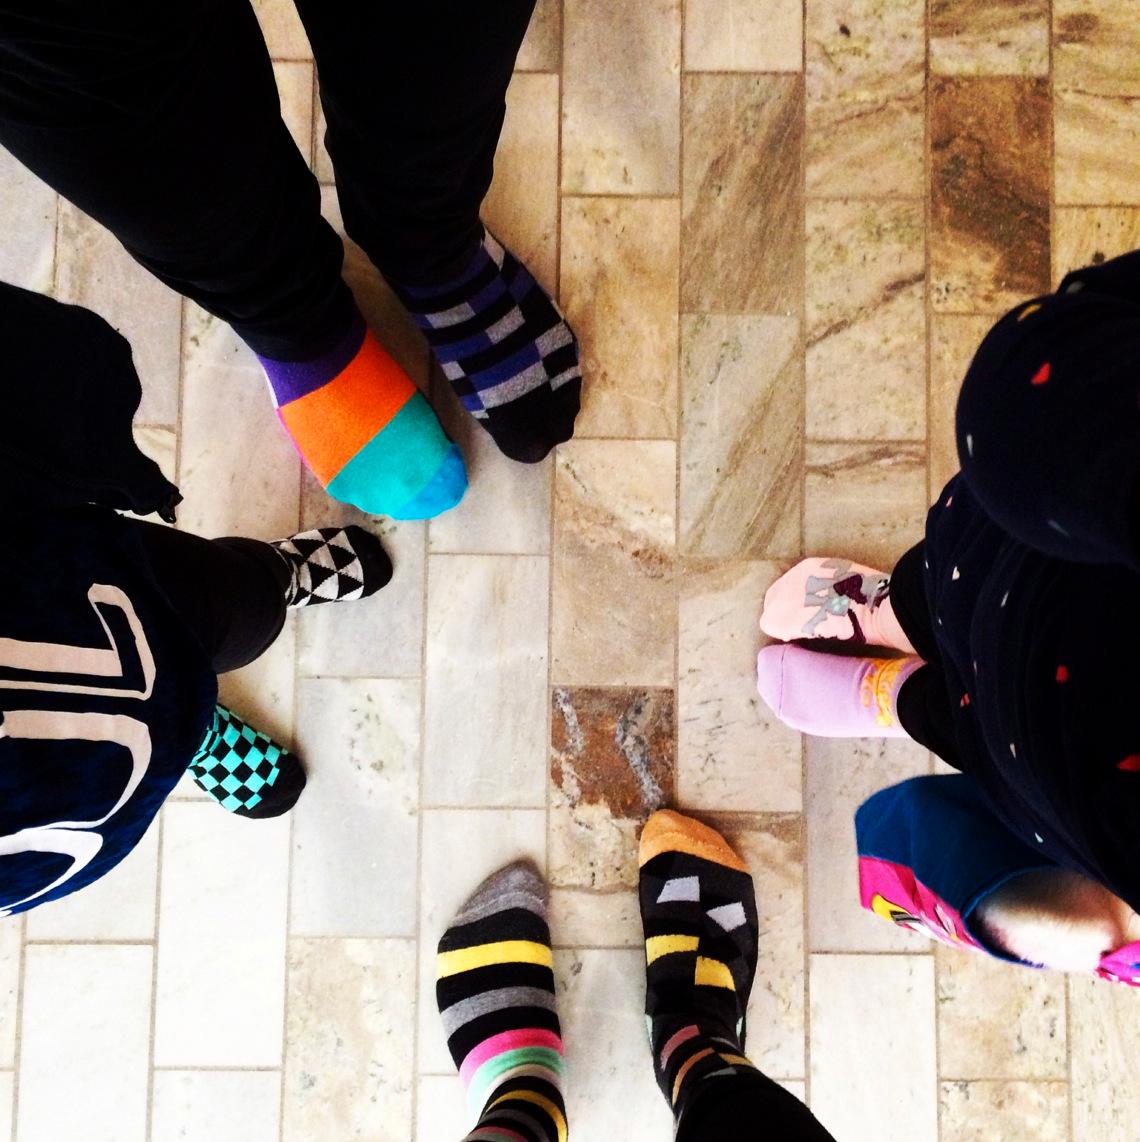 ”Klart att vi rockar sockorna i dag! Lisen, Lukas, Greta & Sigge”